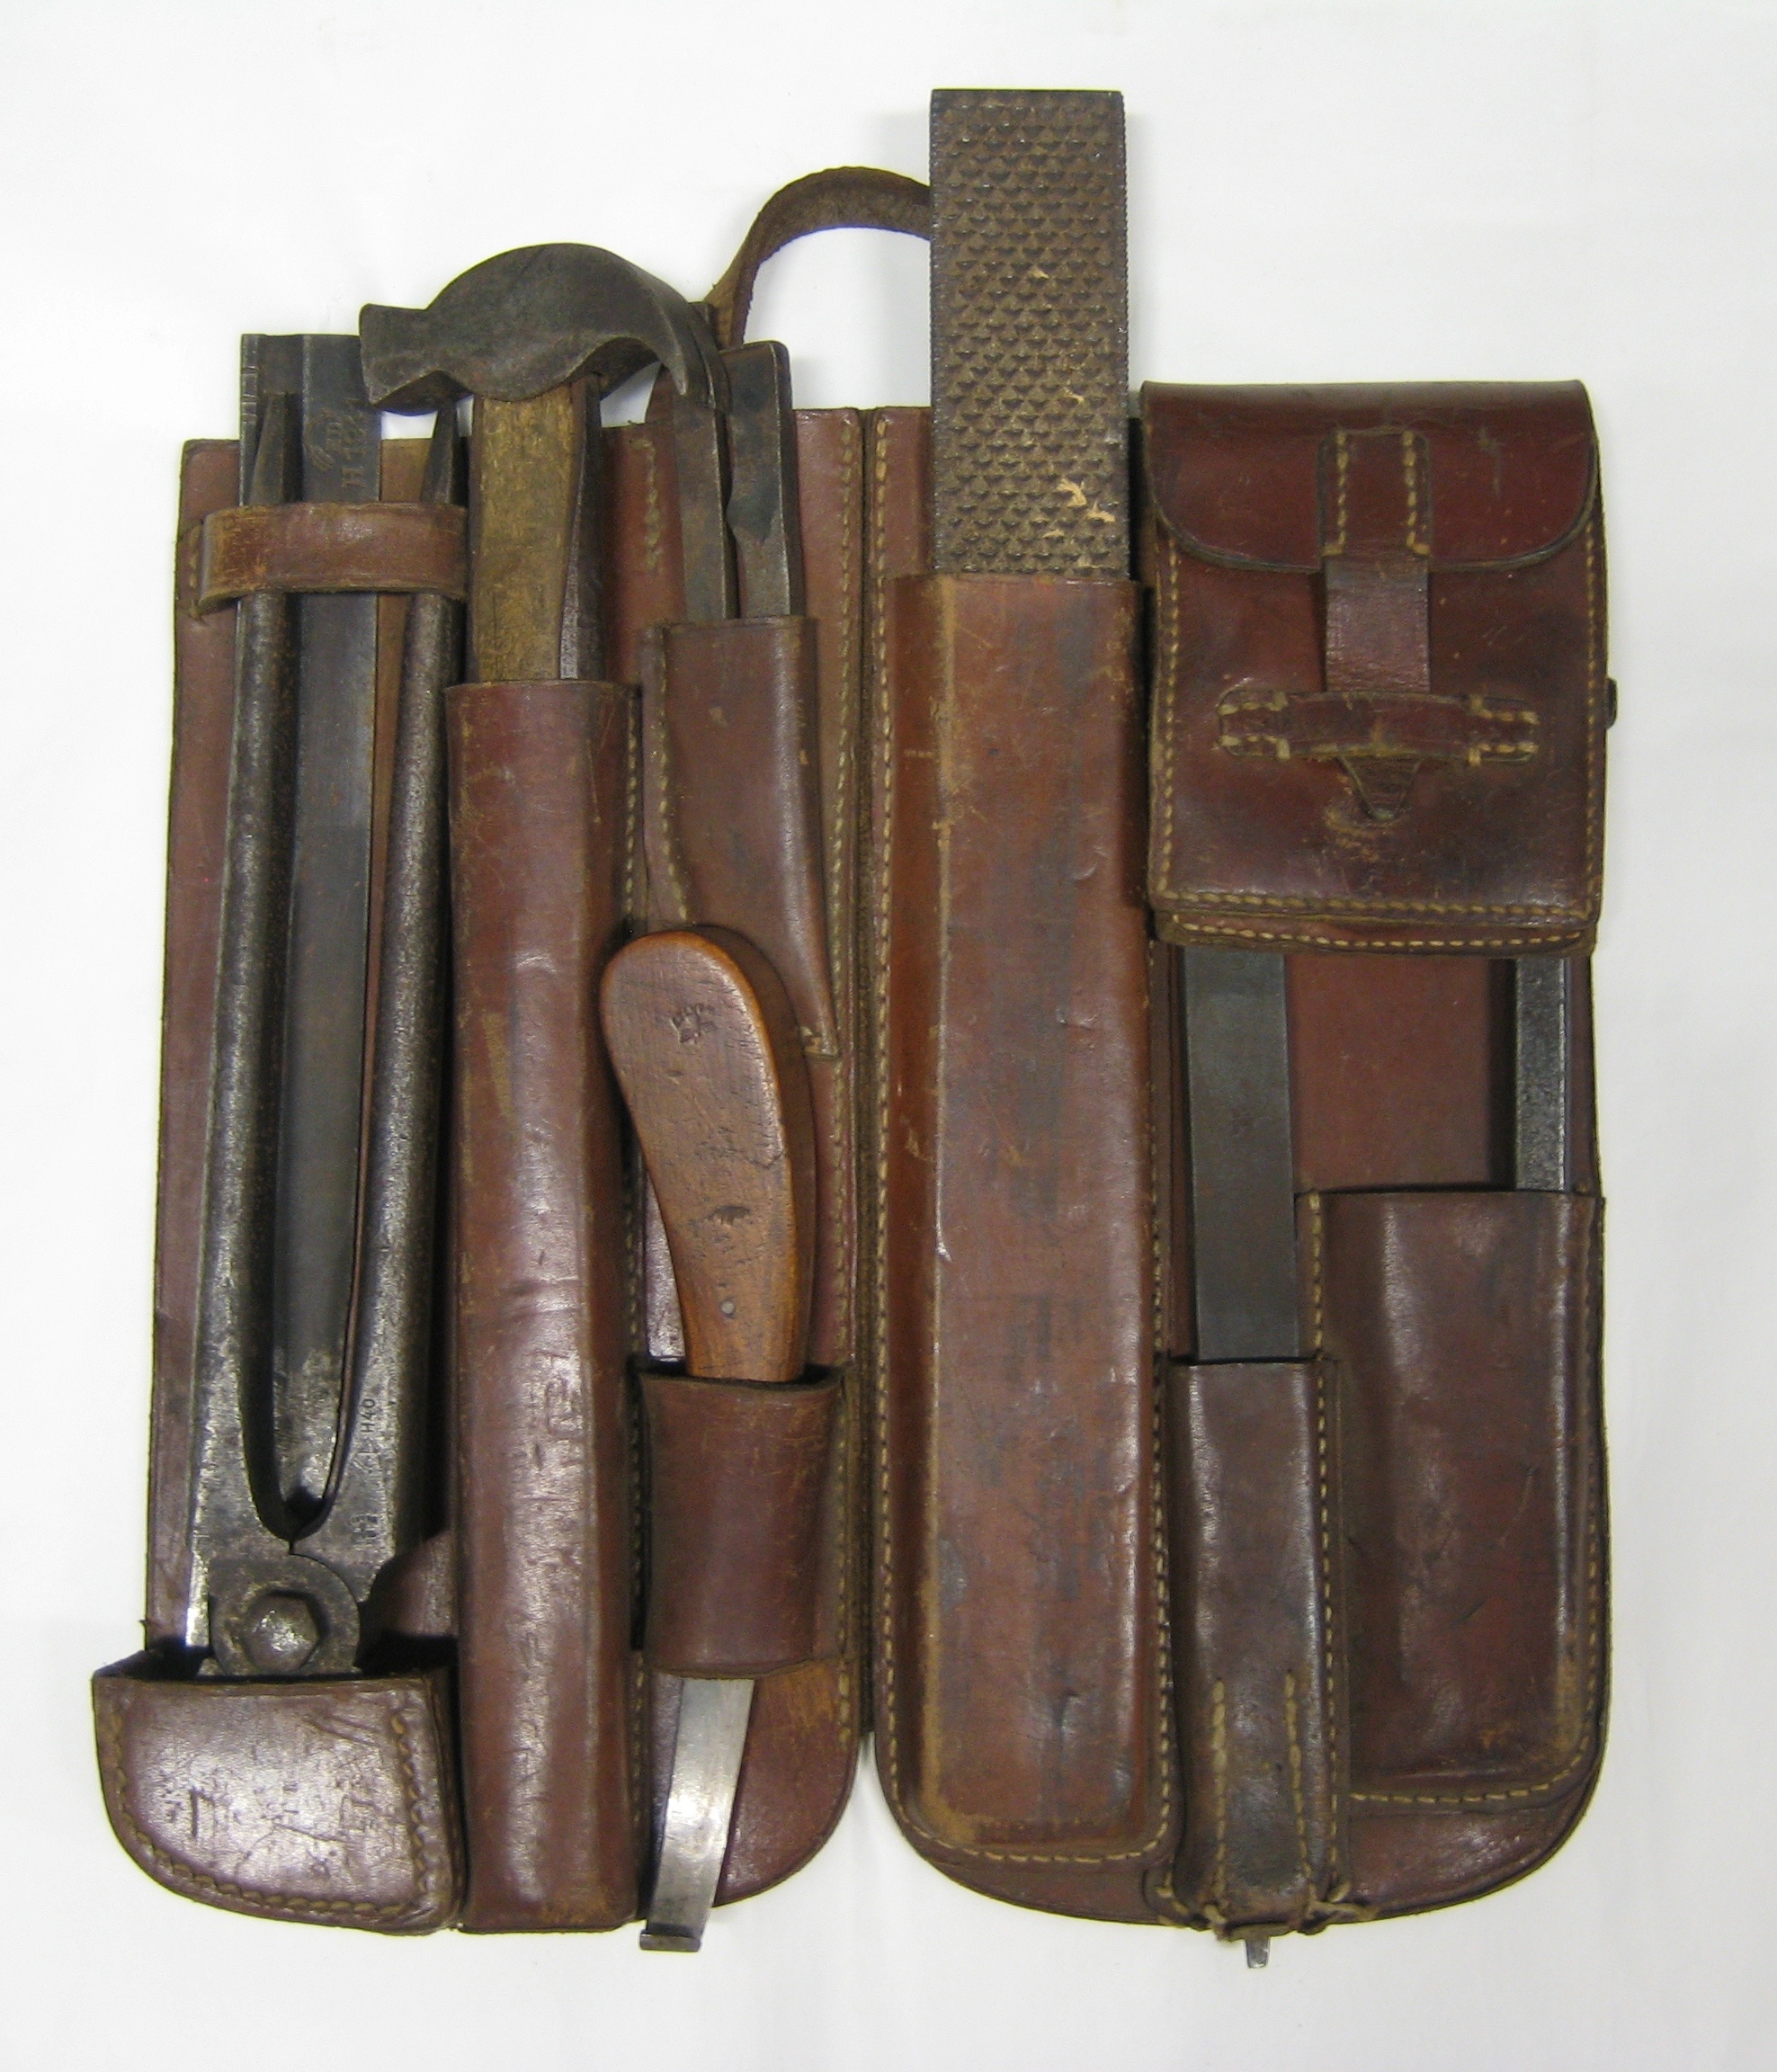 Beschlagzeugtasche aus dem Zweiten Weltkrieg (Westfälisches Pferdemuseum CC BY-NC-SA)